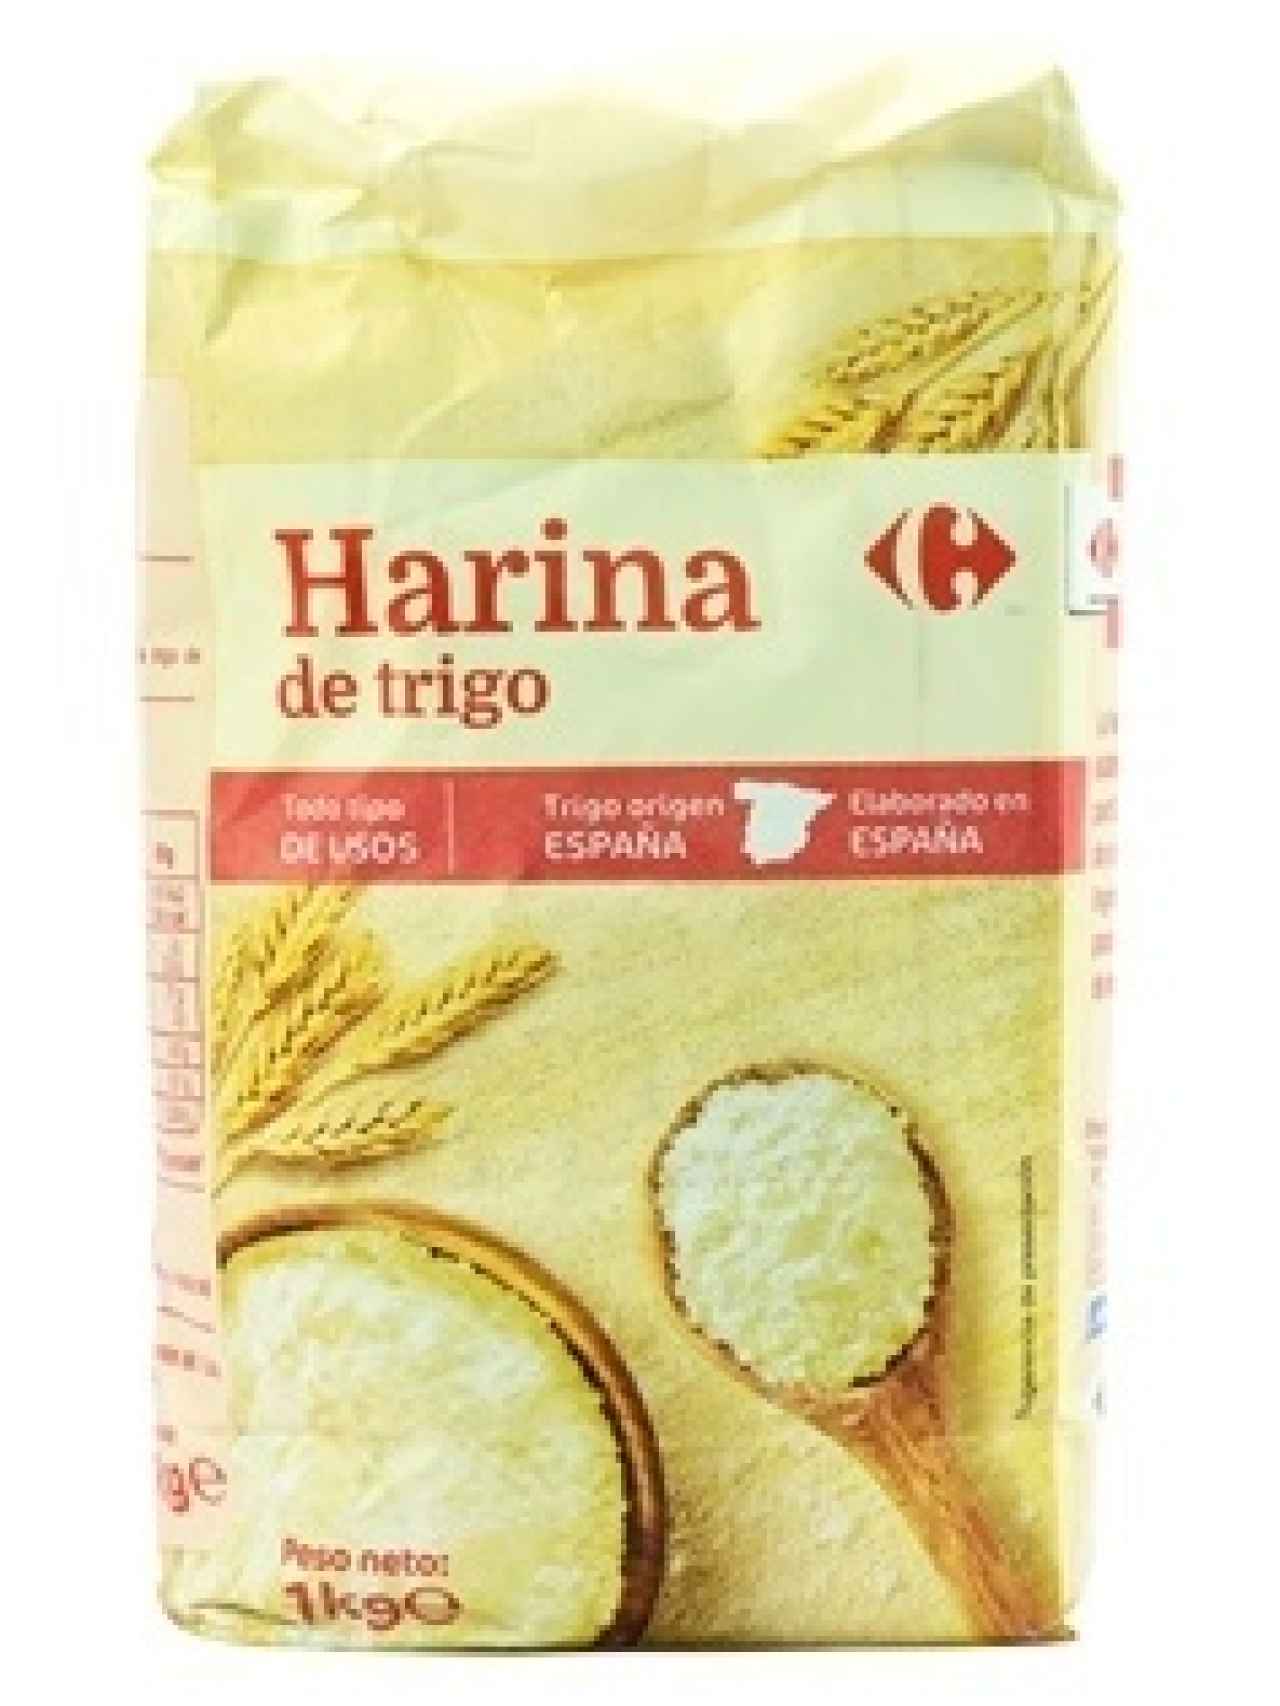 La harina de trigo de la marca blanca de Carrefour.